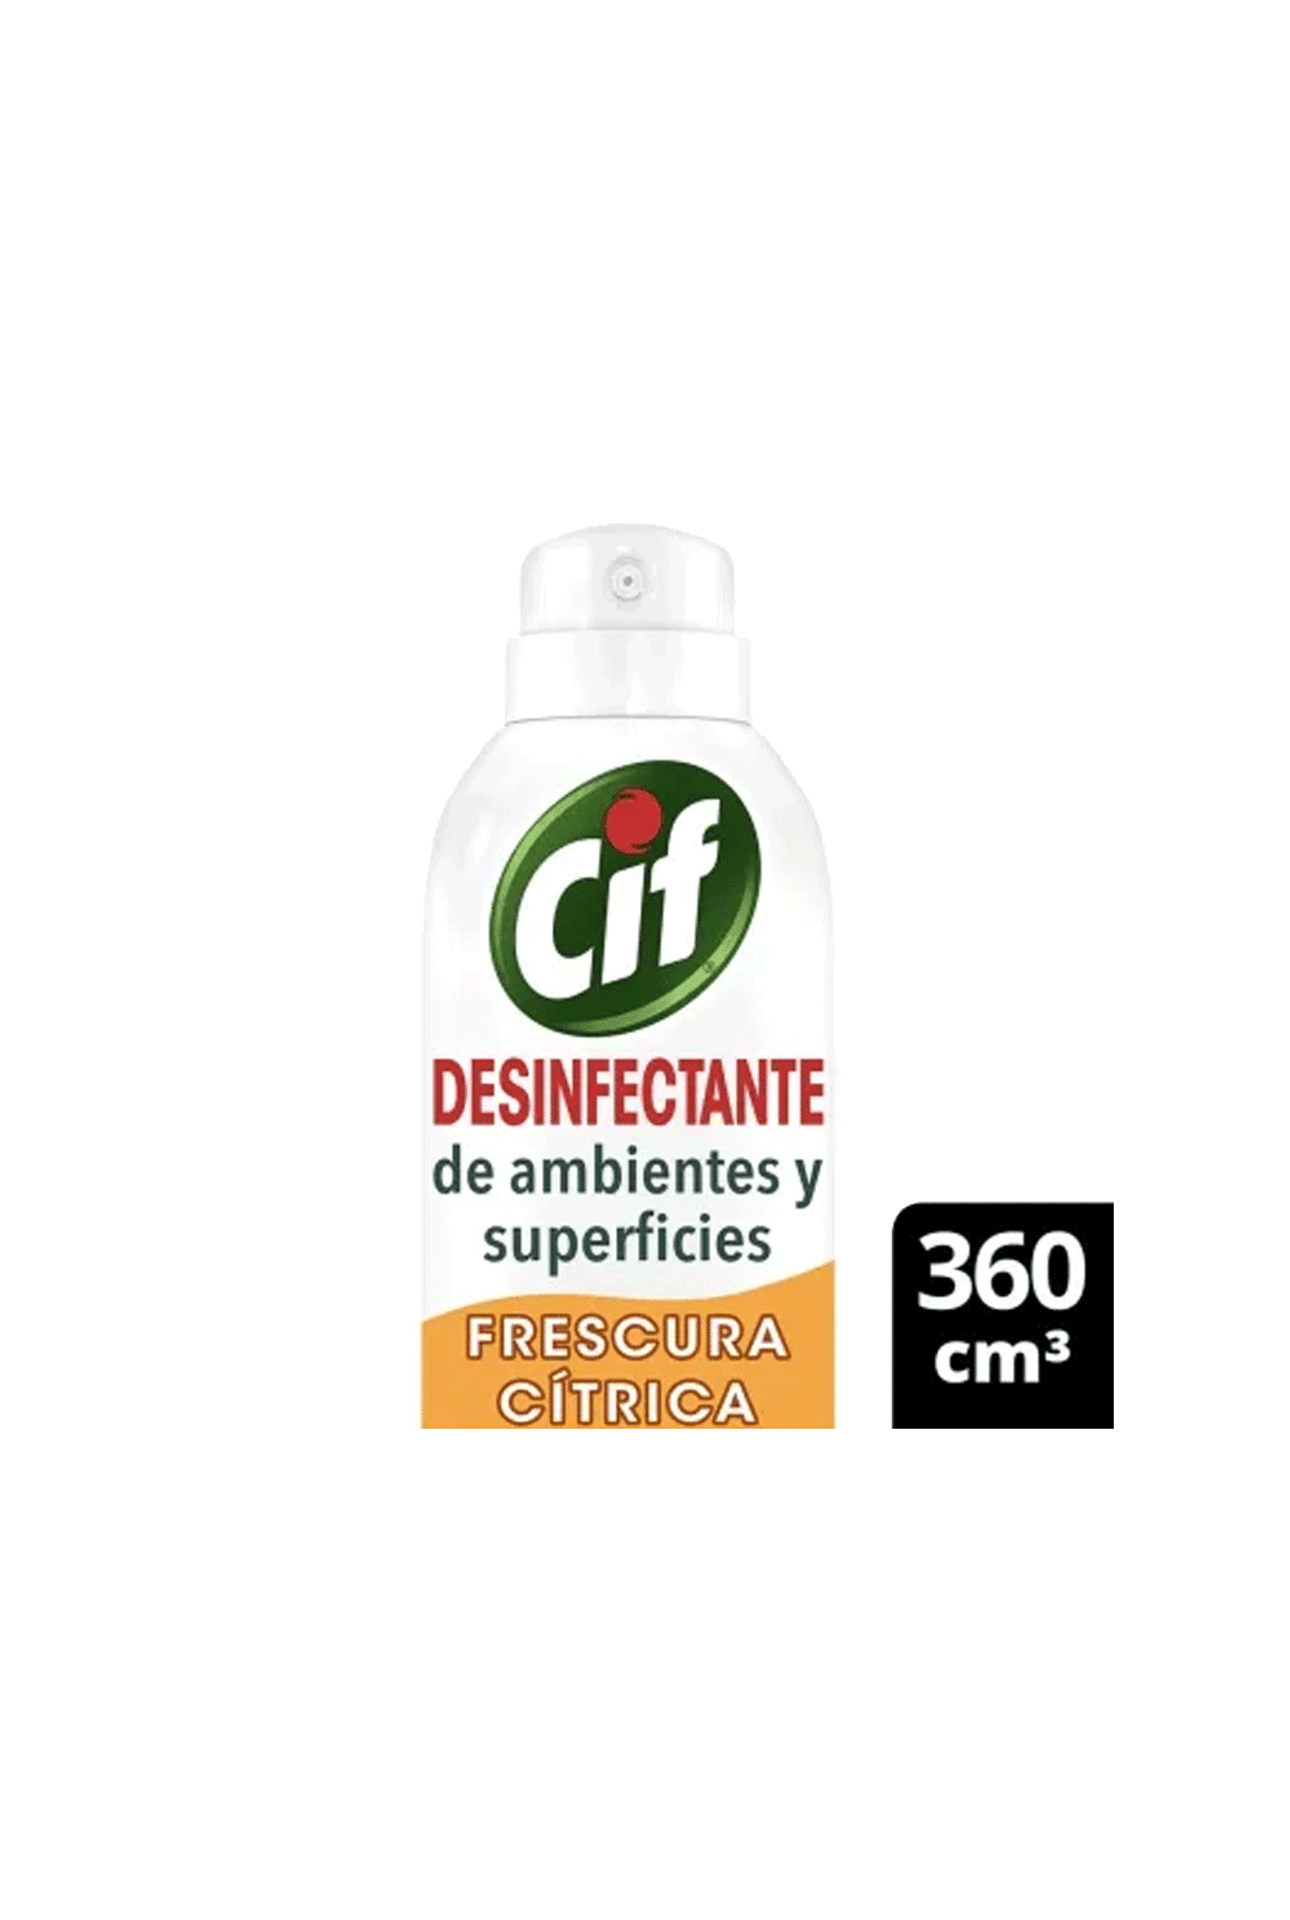 Desinfectante-En-Aerosol-Cif-Frescura-Citrica-x-360-ml-Cif